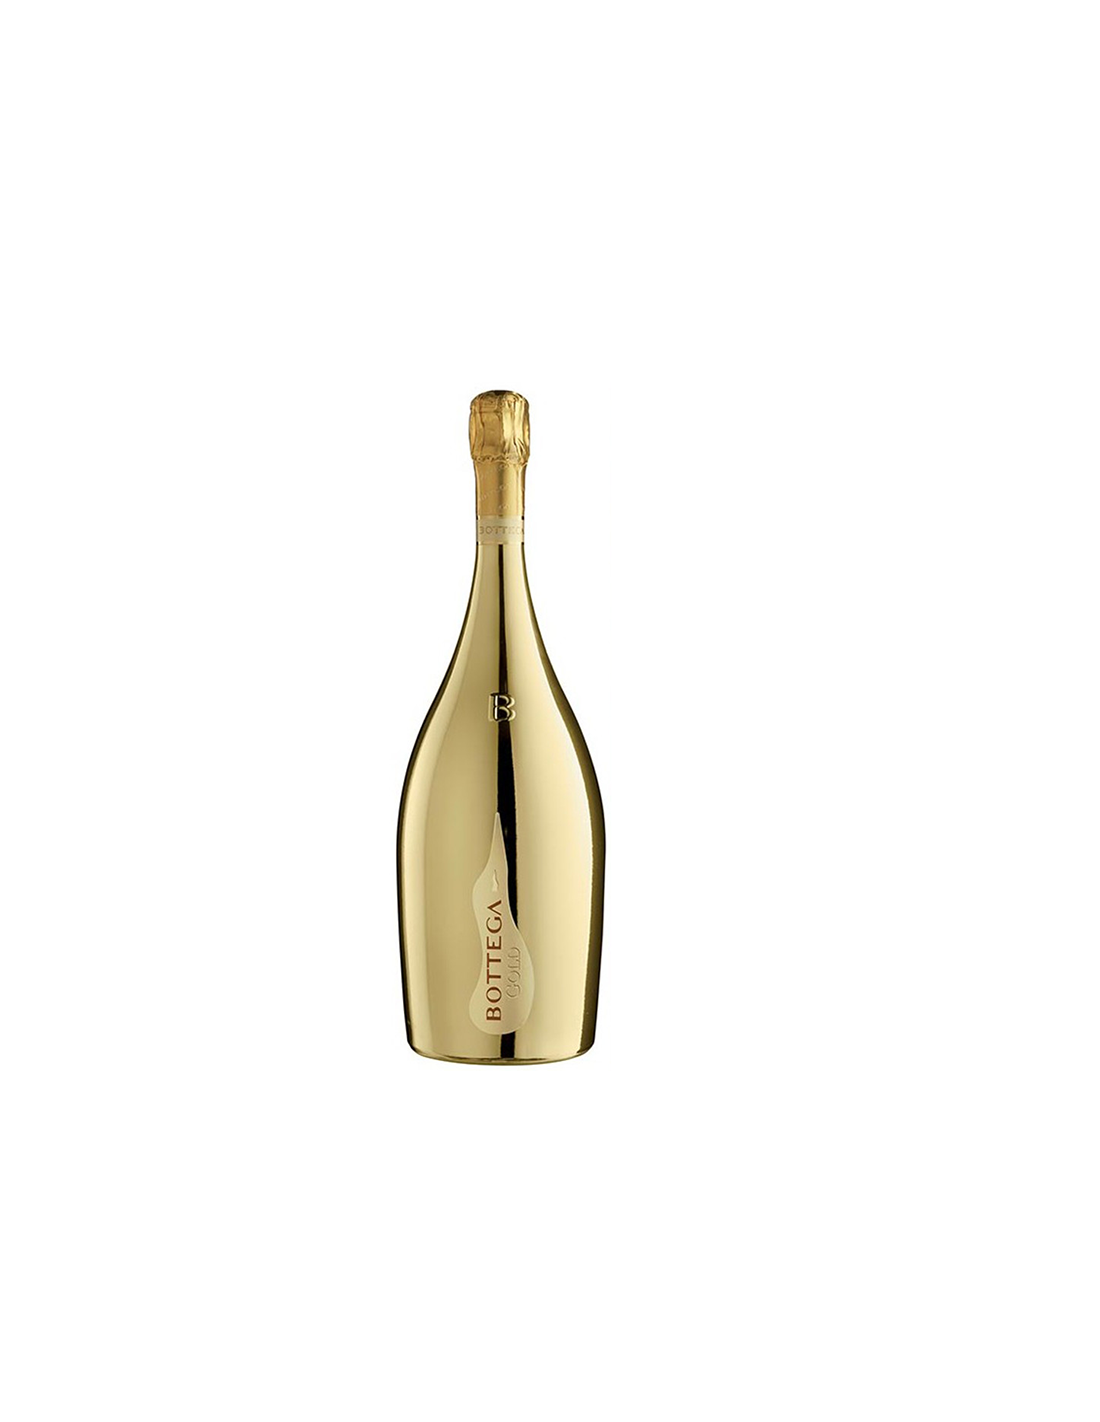 Vin spumant Bottega Gold, 11% alc, 1.5L, Italia